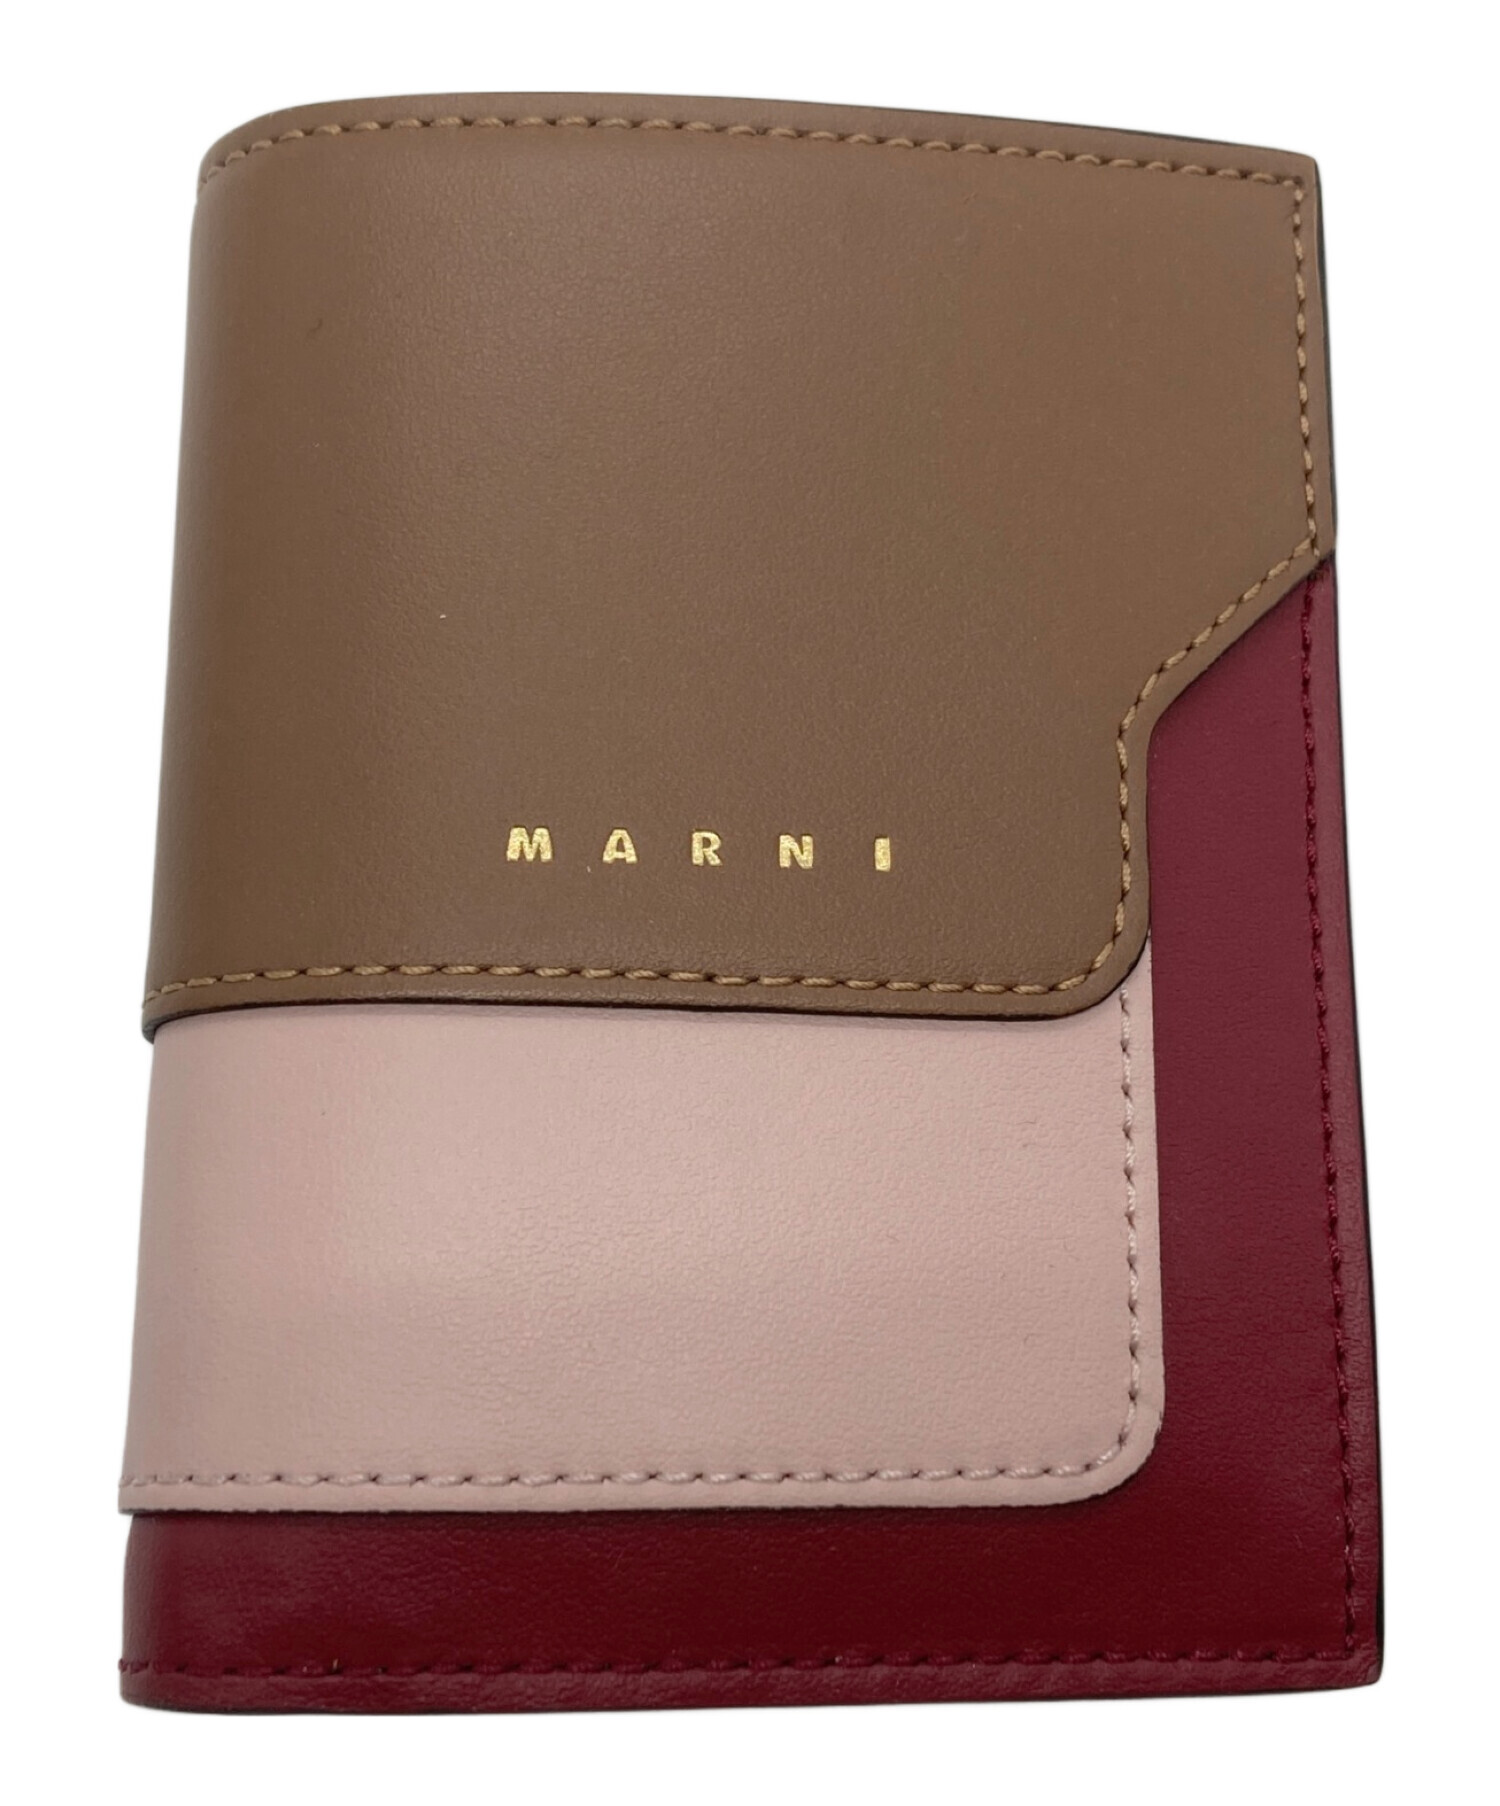 MARNI (マルニ) コンパクトウォレット サフィアーノレザー バイカラー 2つ折り財布 ボルドー